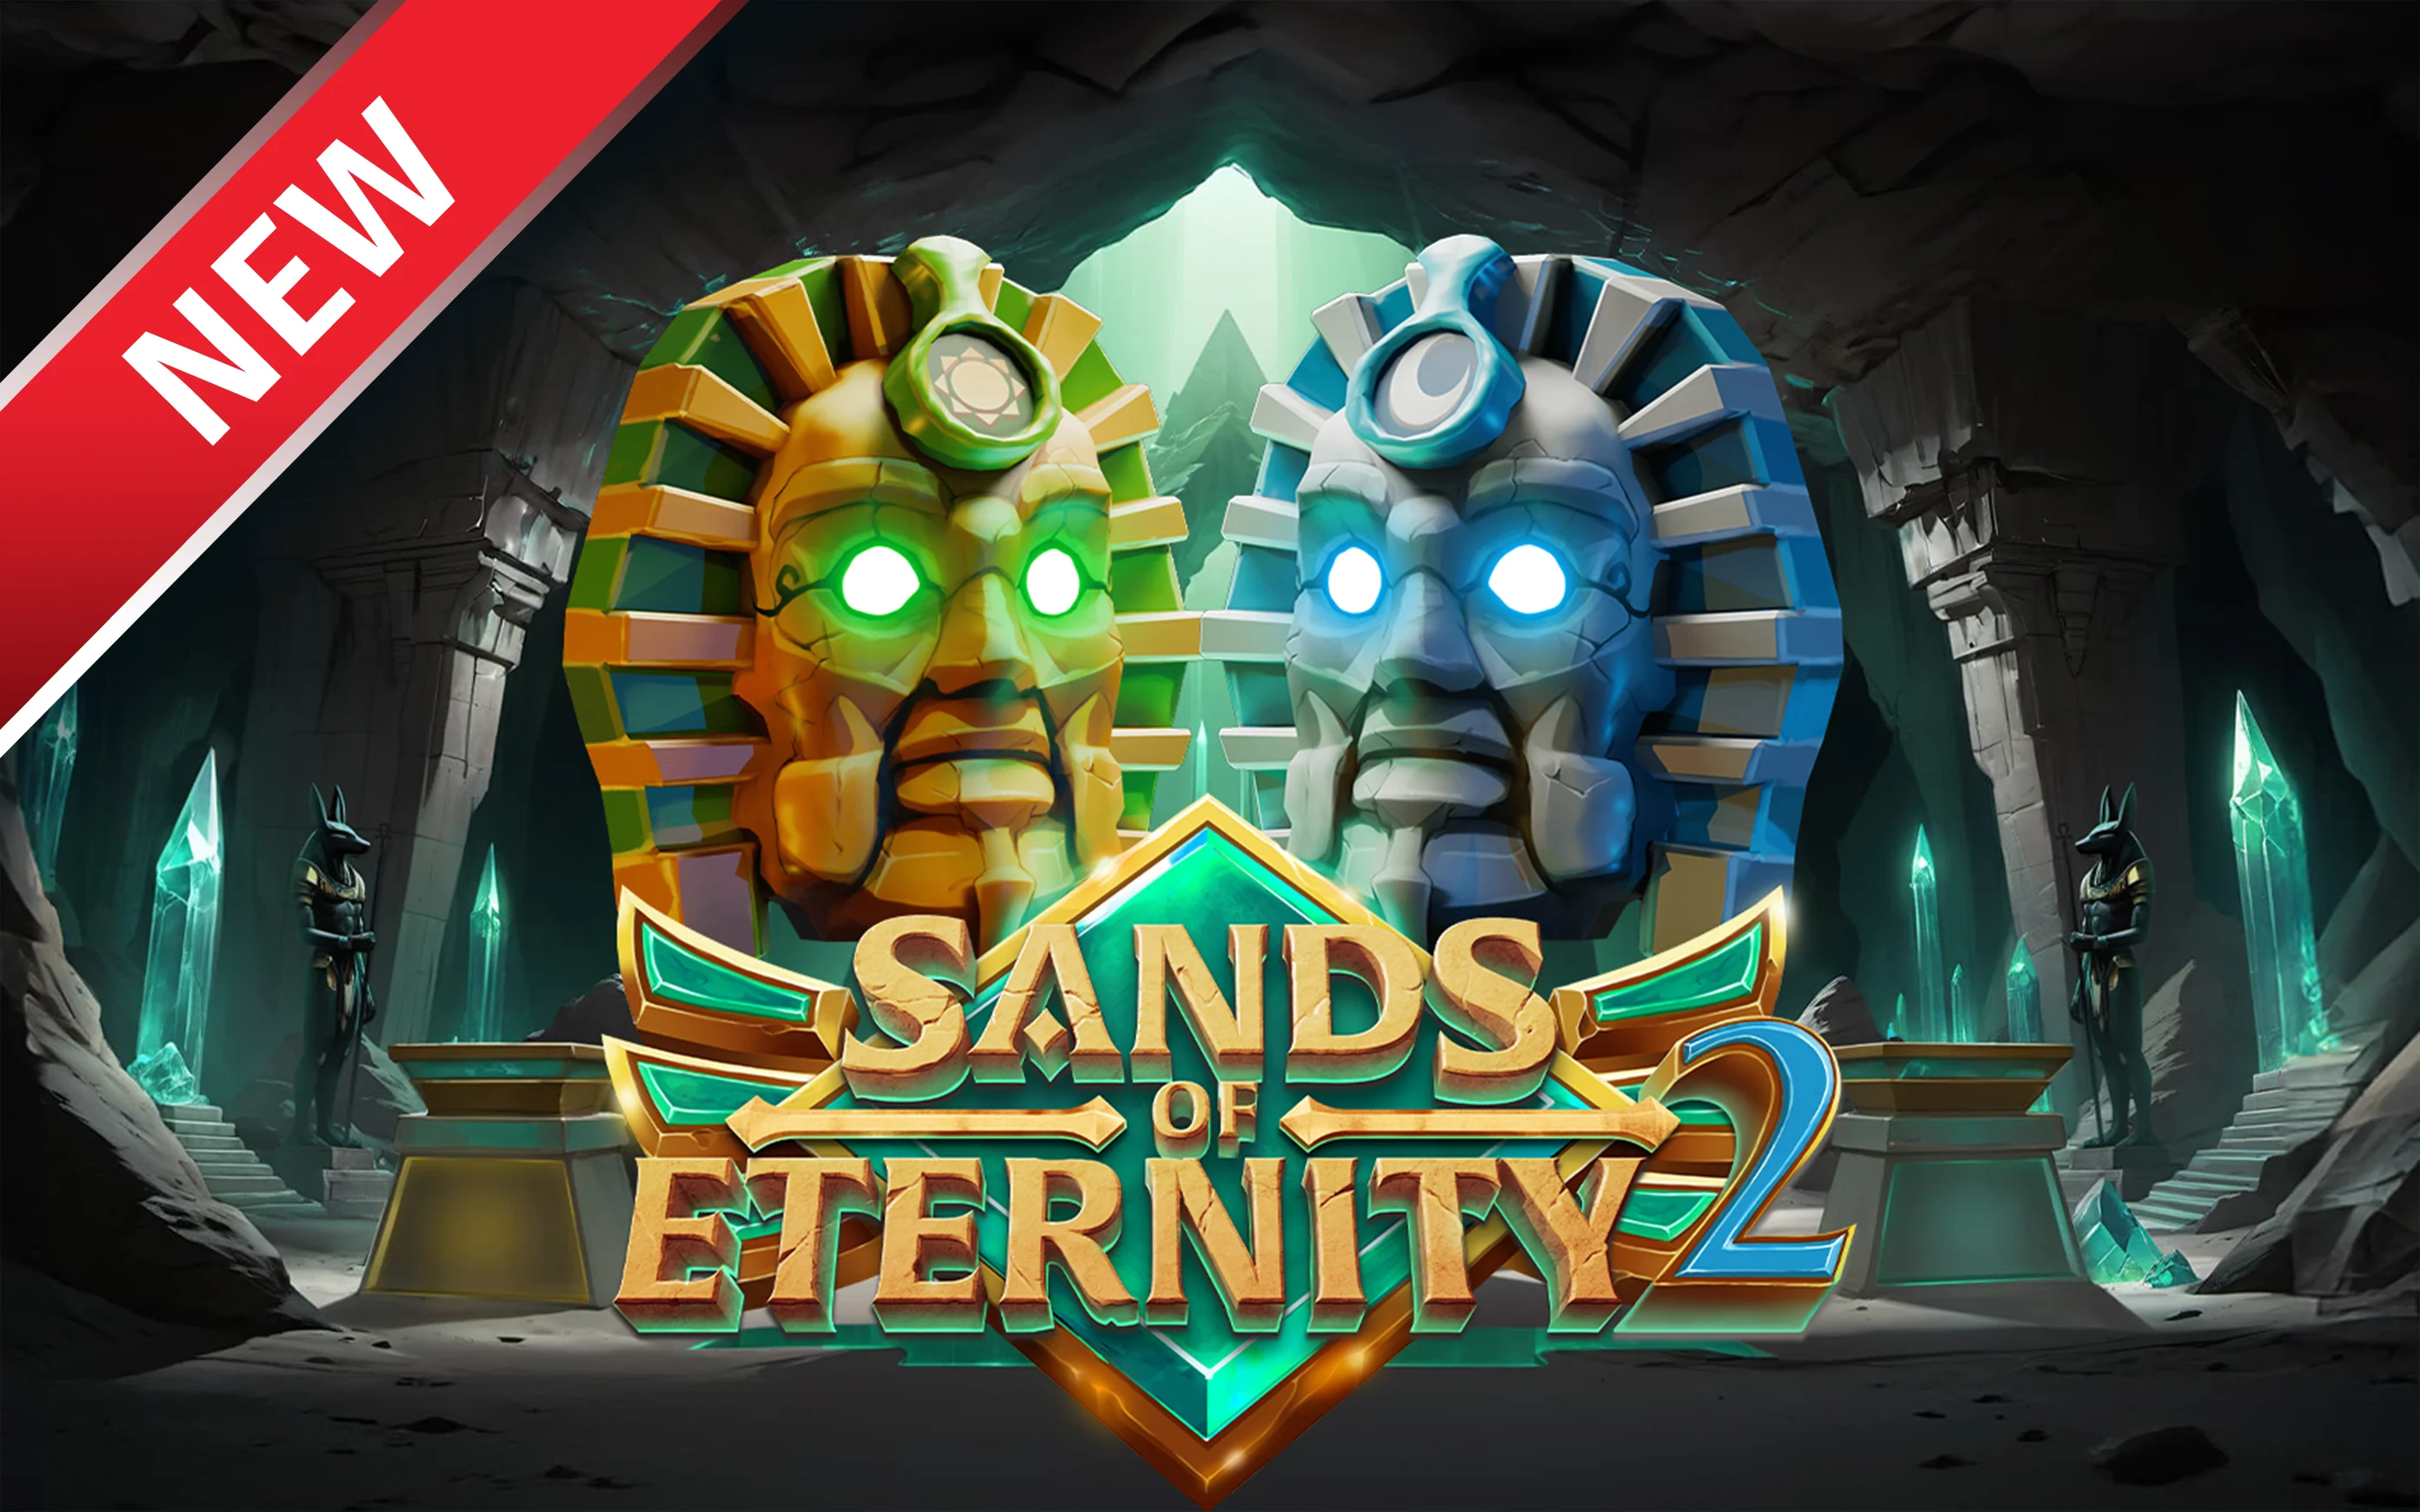 Juega a Sands of Eternity 2 en el casino en línea de Starcasino.be